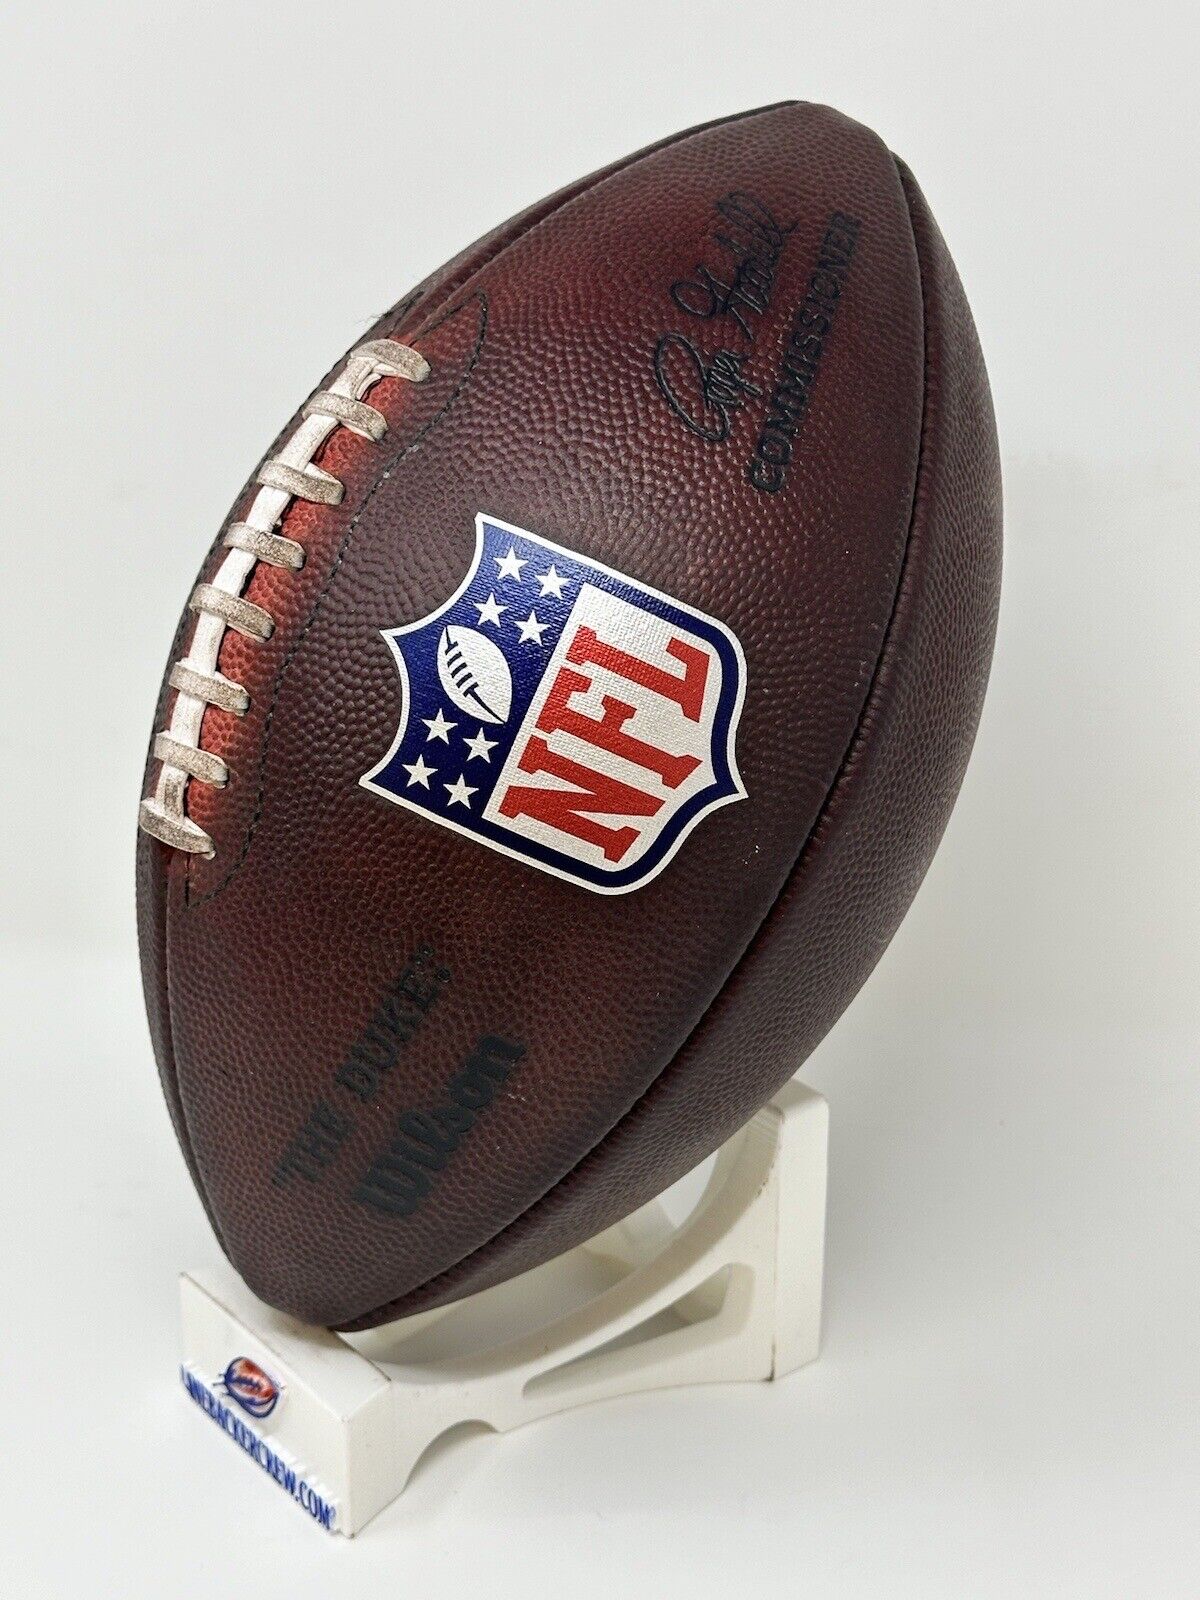 Fully Game Prepped NFL The Wilson LLC Footballs Football – Duke LBC